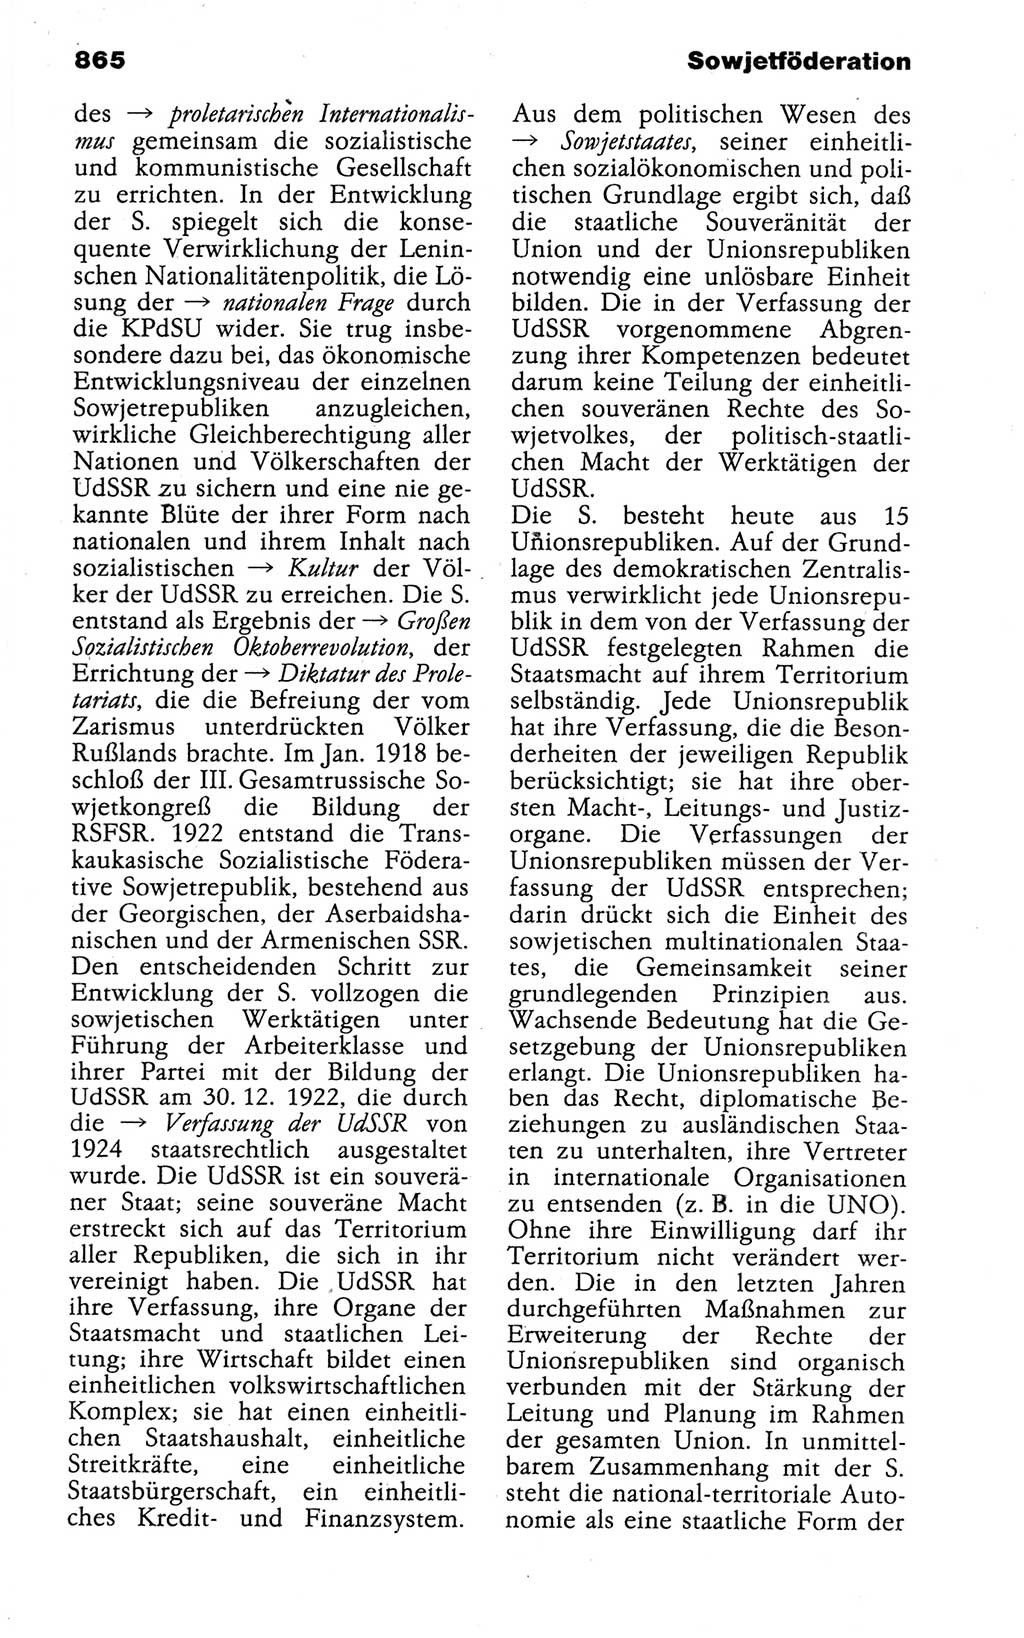 Kleines politisches Wörterbuch [Deutsche Demokratische Republik (DDR)] 1988, Seite 865 (Kl. pol. Wb. DDR 1988, S. 865)